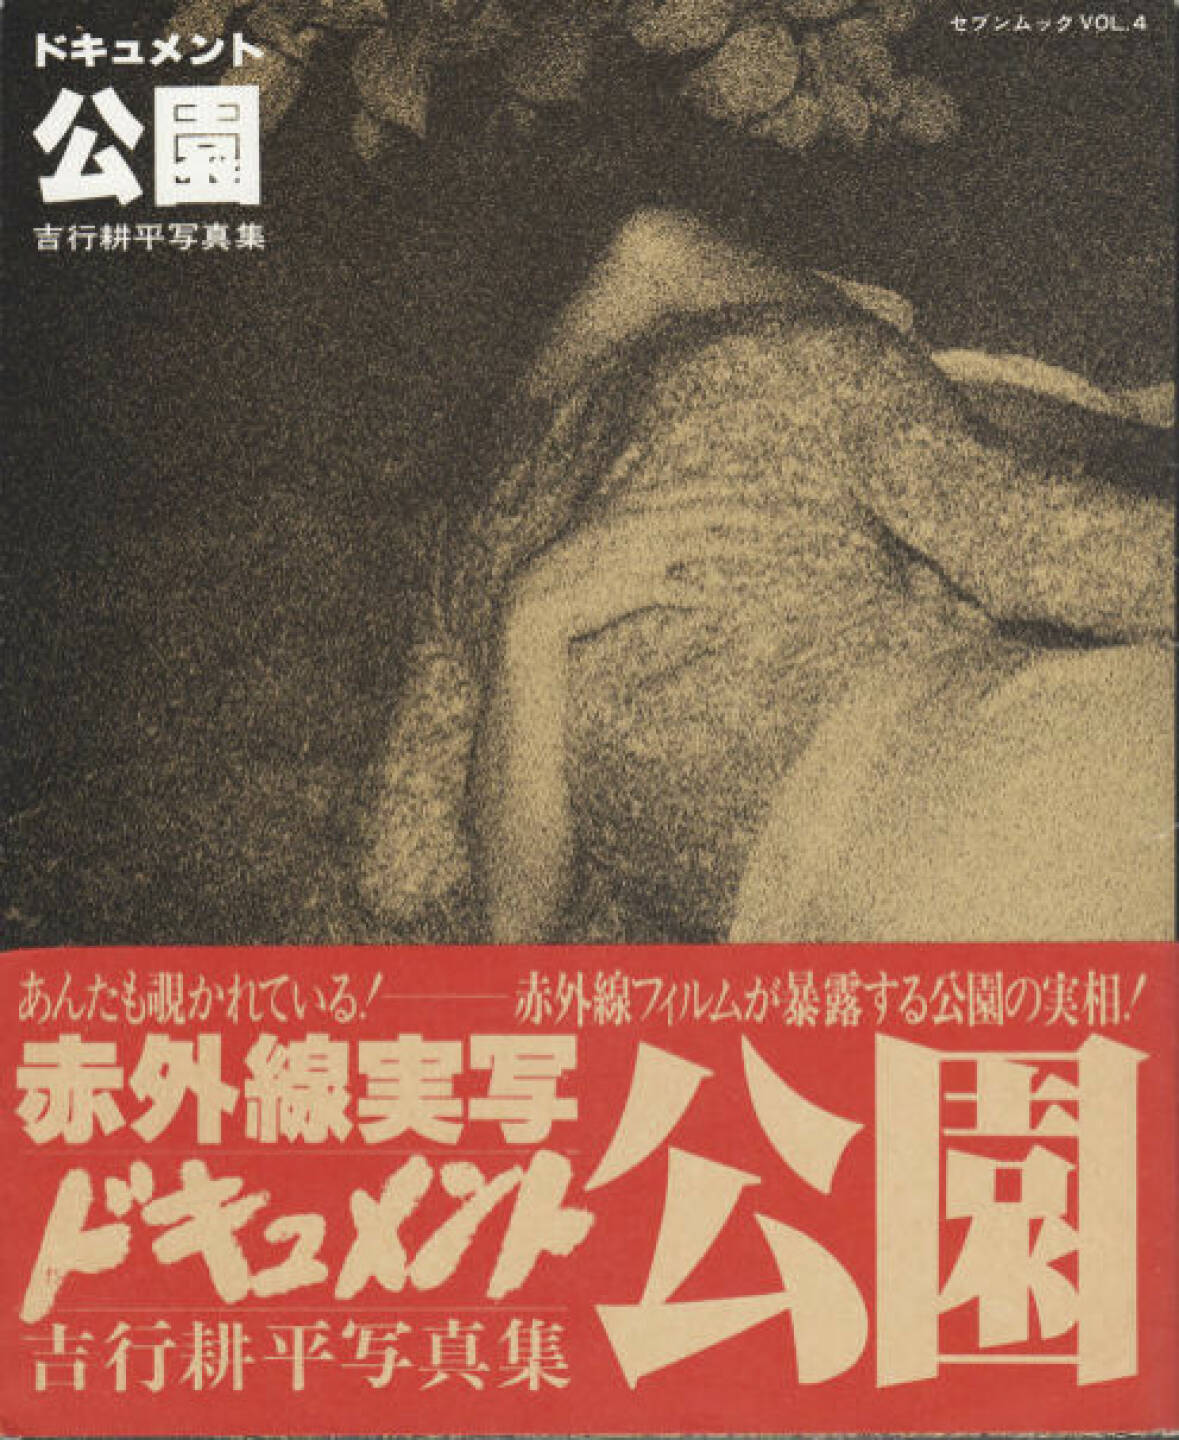 Kohei Yoshiyuki - Document Kouen / Document Park, Preis: 350-550 Euro, http://josefchladek.com/book/kohei_yoshiyuki_-_document_kouen_document_park